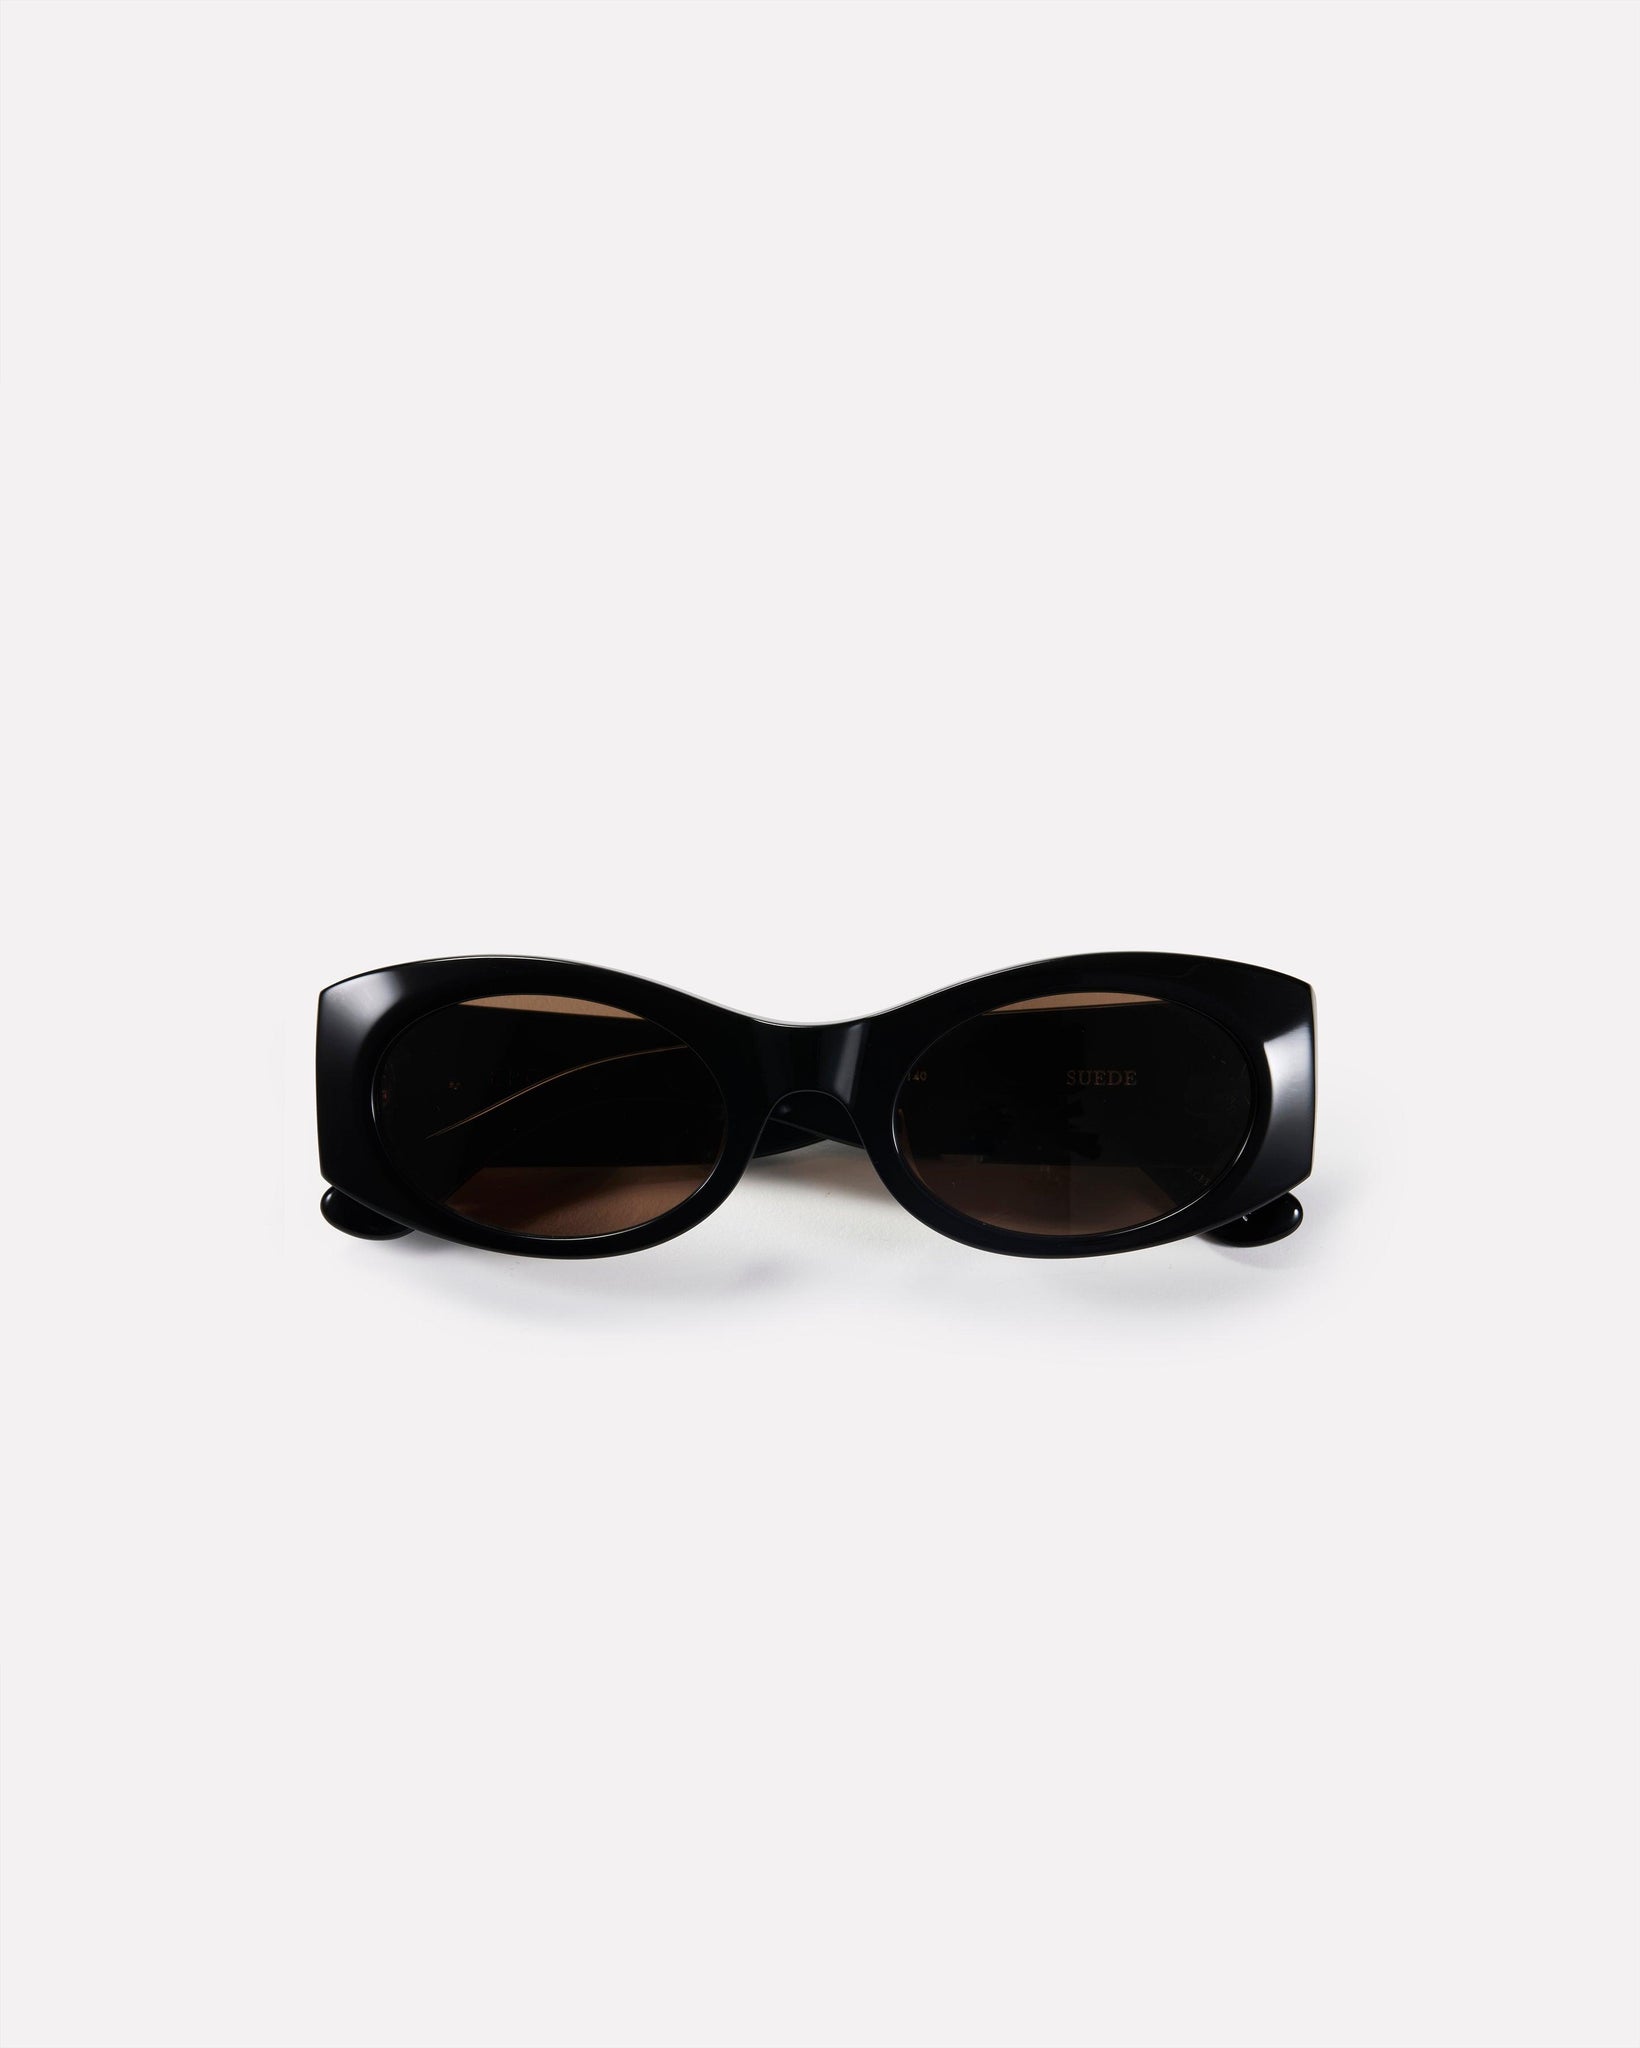 Suede - Black Polished / Bronze Amber - Sunglasses - EPOKHE EYEWEAR